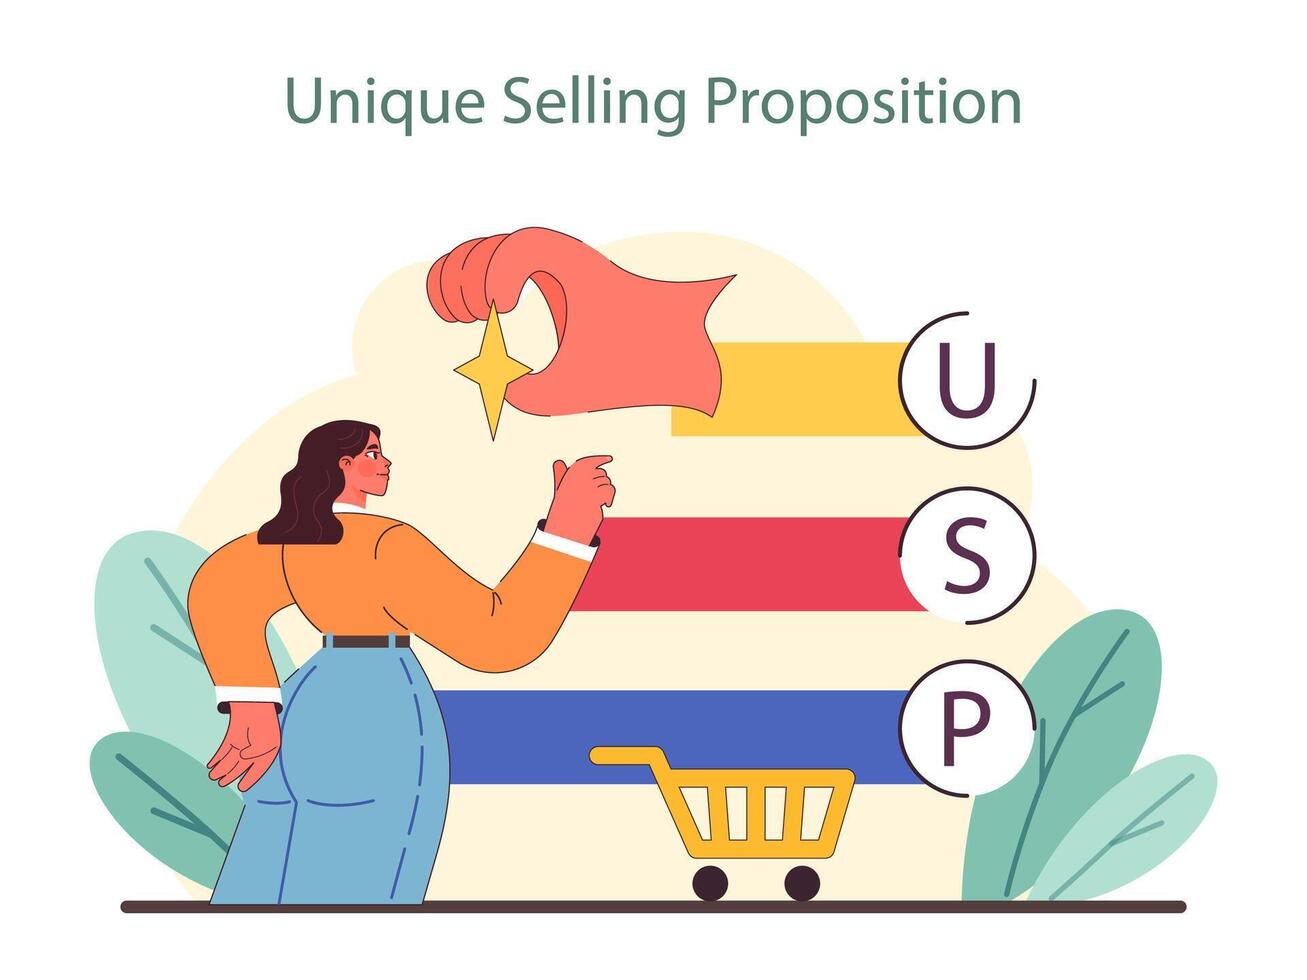 einzigartig Verkauf Vorschlag Konzept. Highlights das Prozess von definieren auffallen Eigenschaften im ein wettbewerbsfähig Markt. vektor